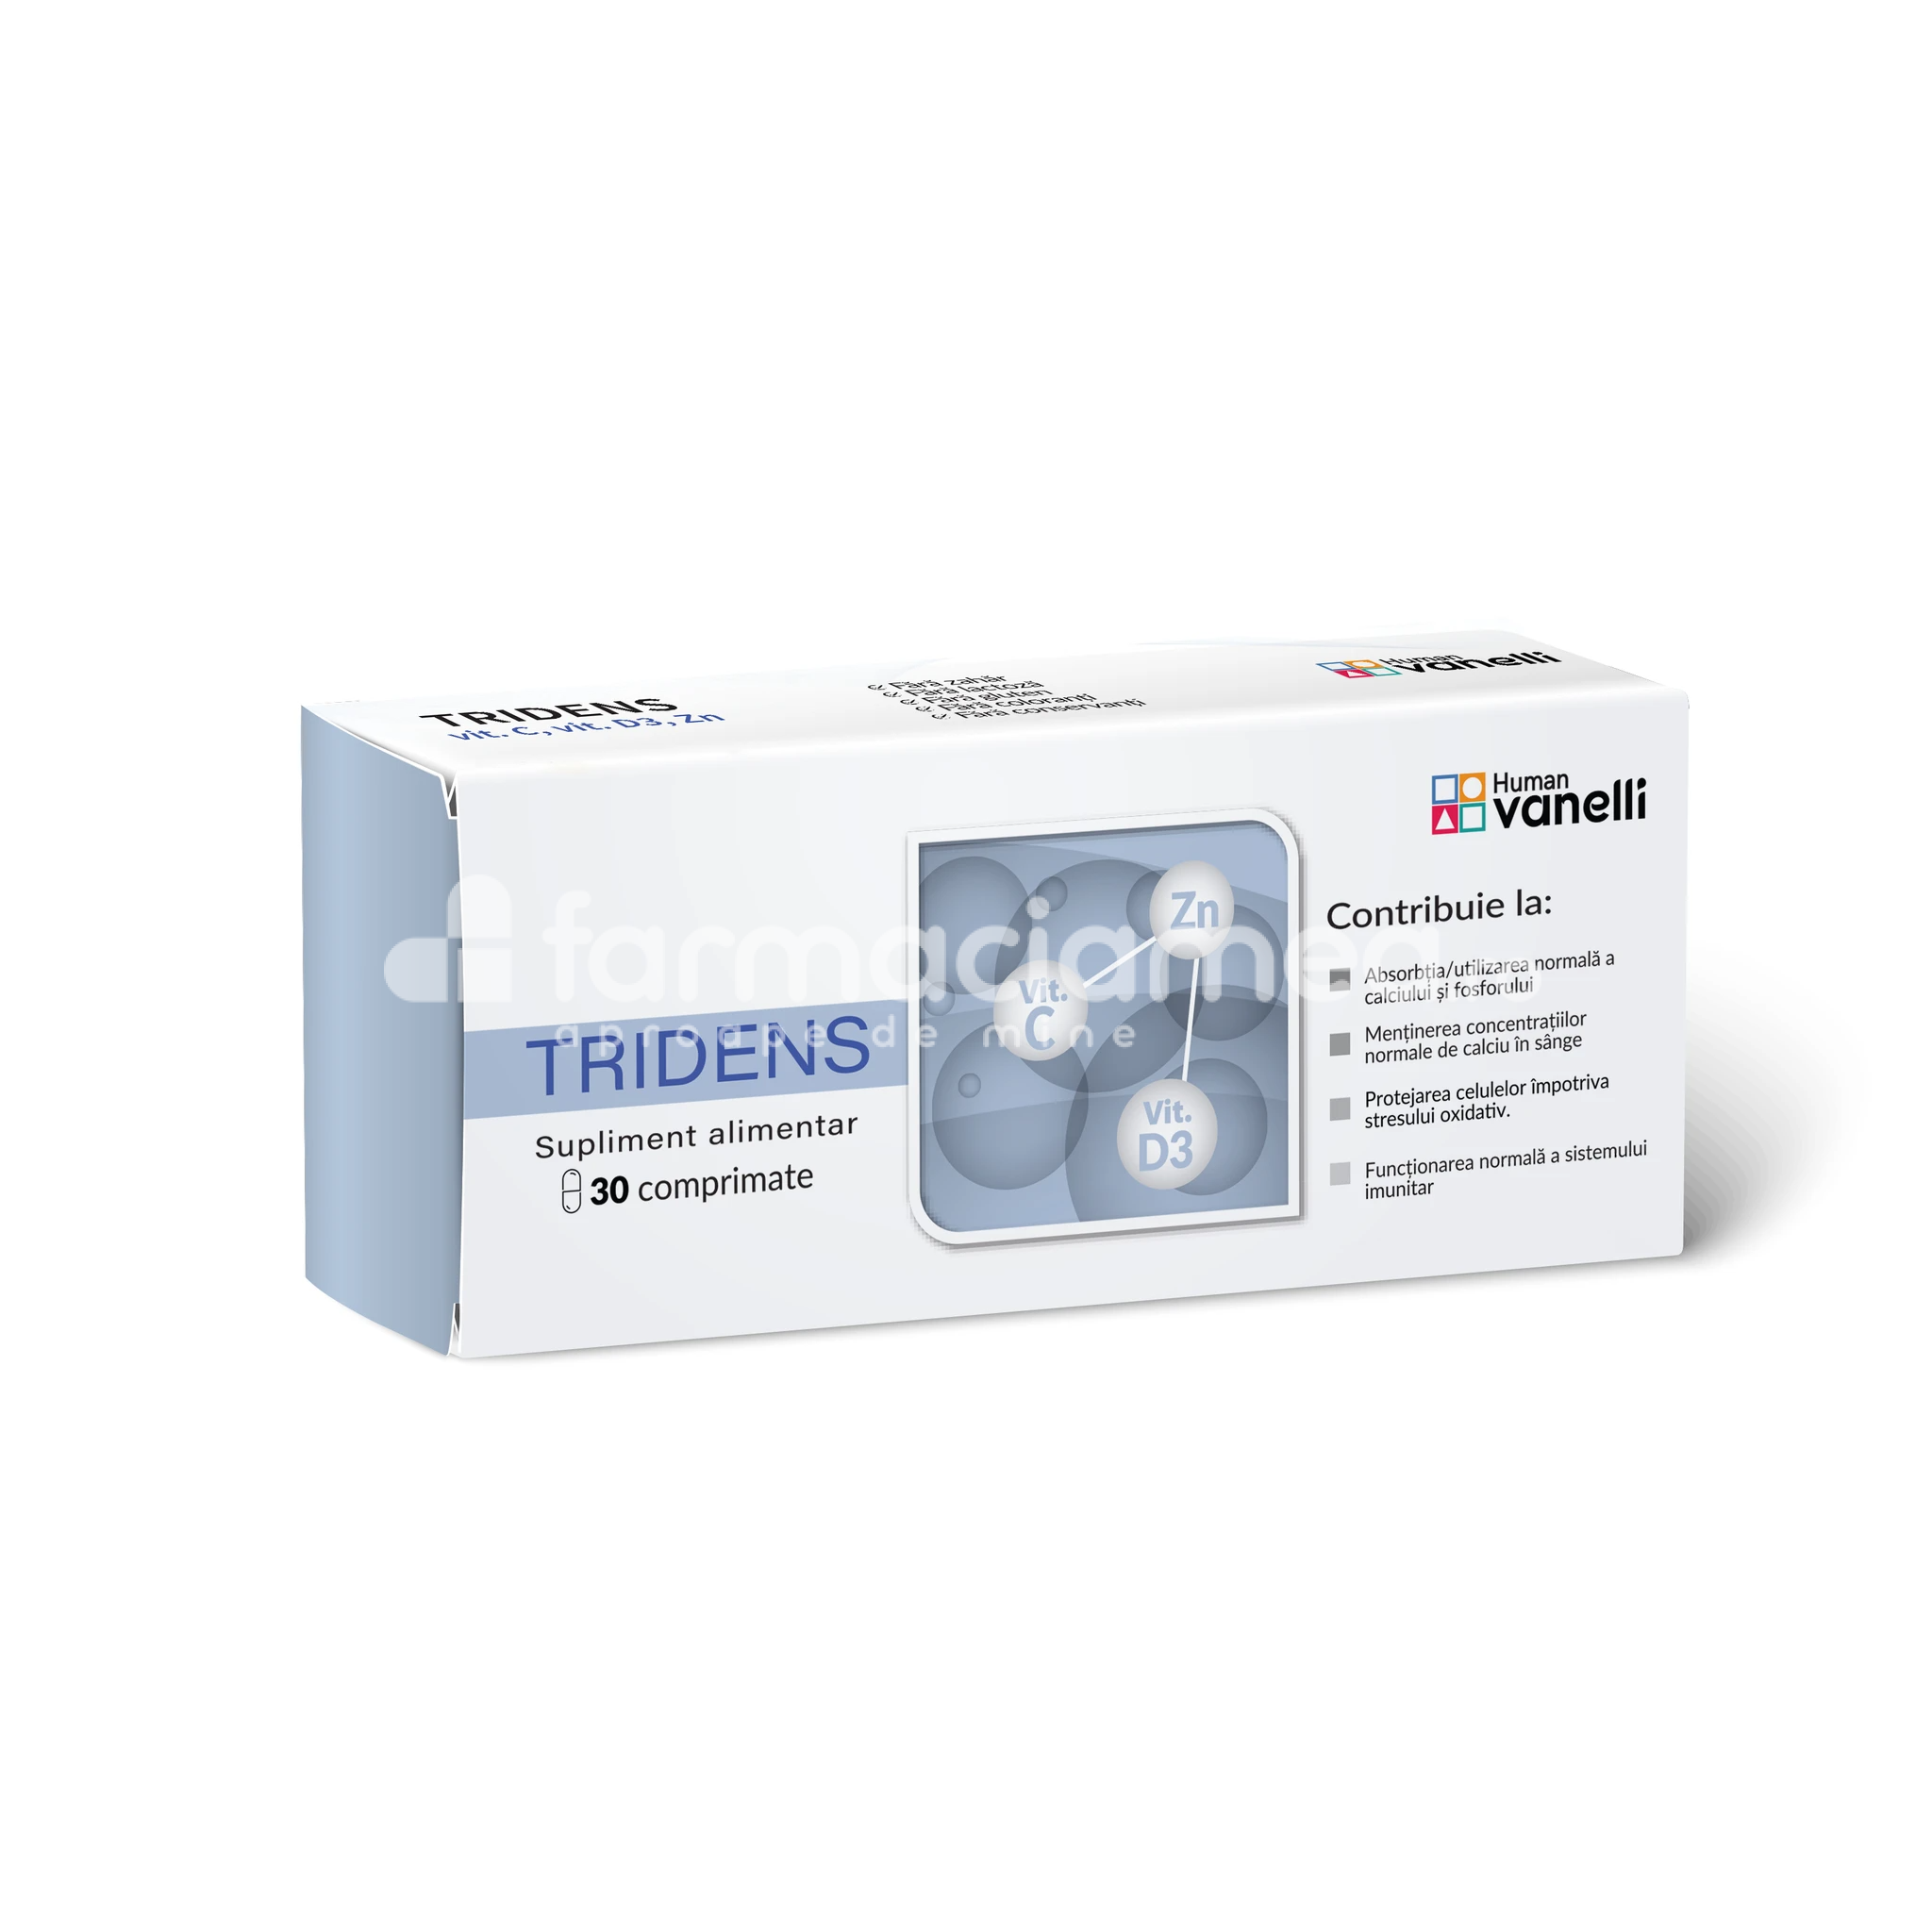 Imunitate - Tridens, 30 comprimate, Vanelli Human, farmaciamea.ro